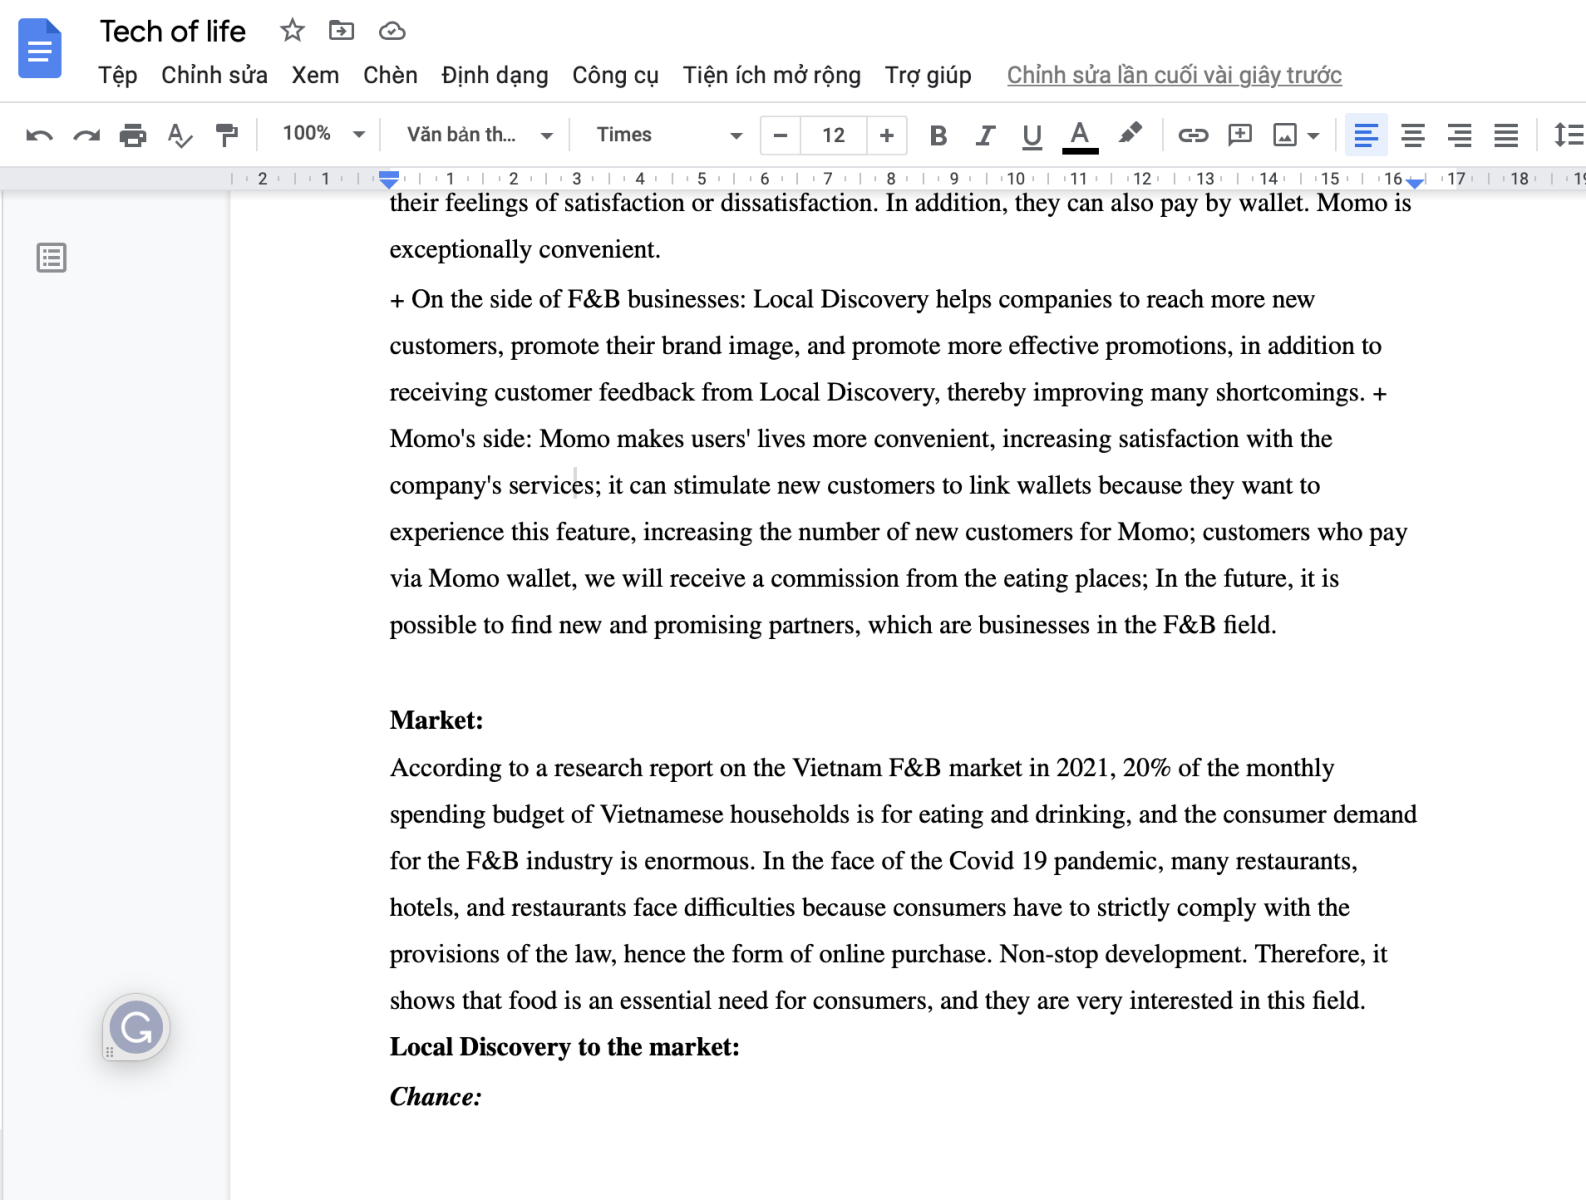 Cách chuyển PDF sang Word bằng Google Drive 4